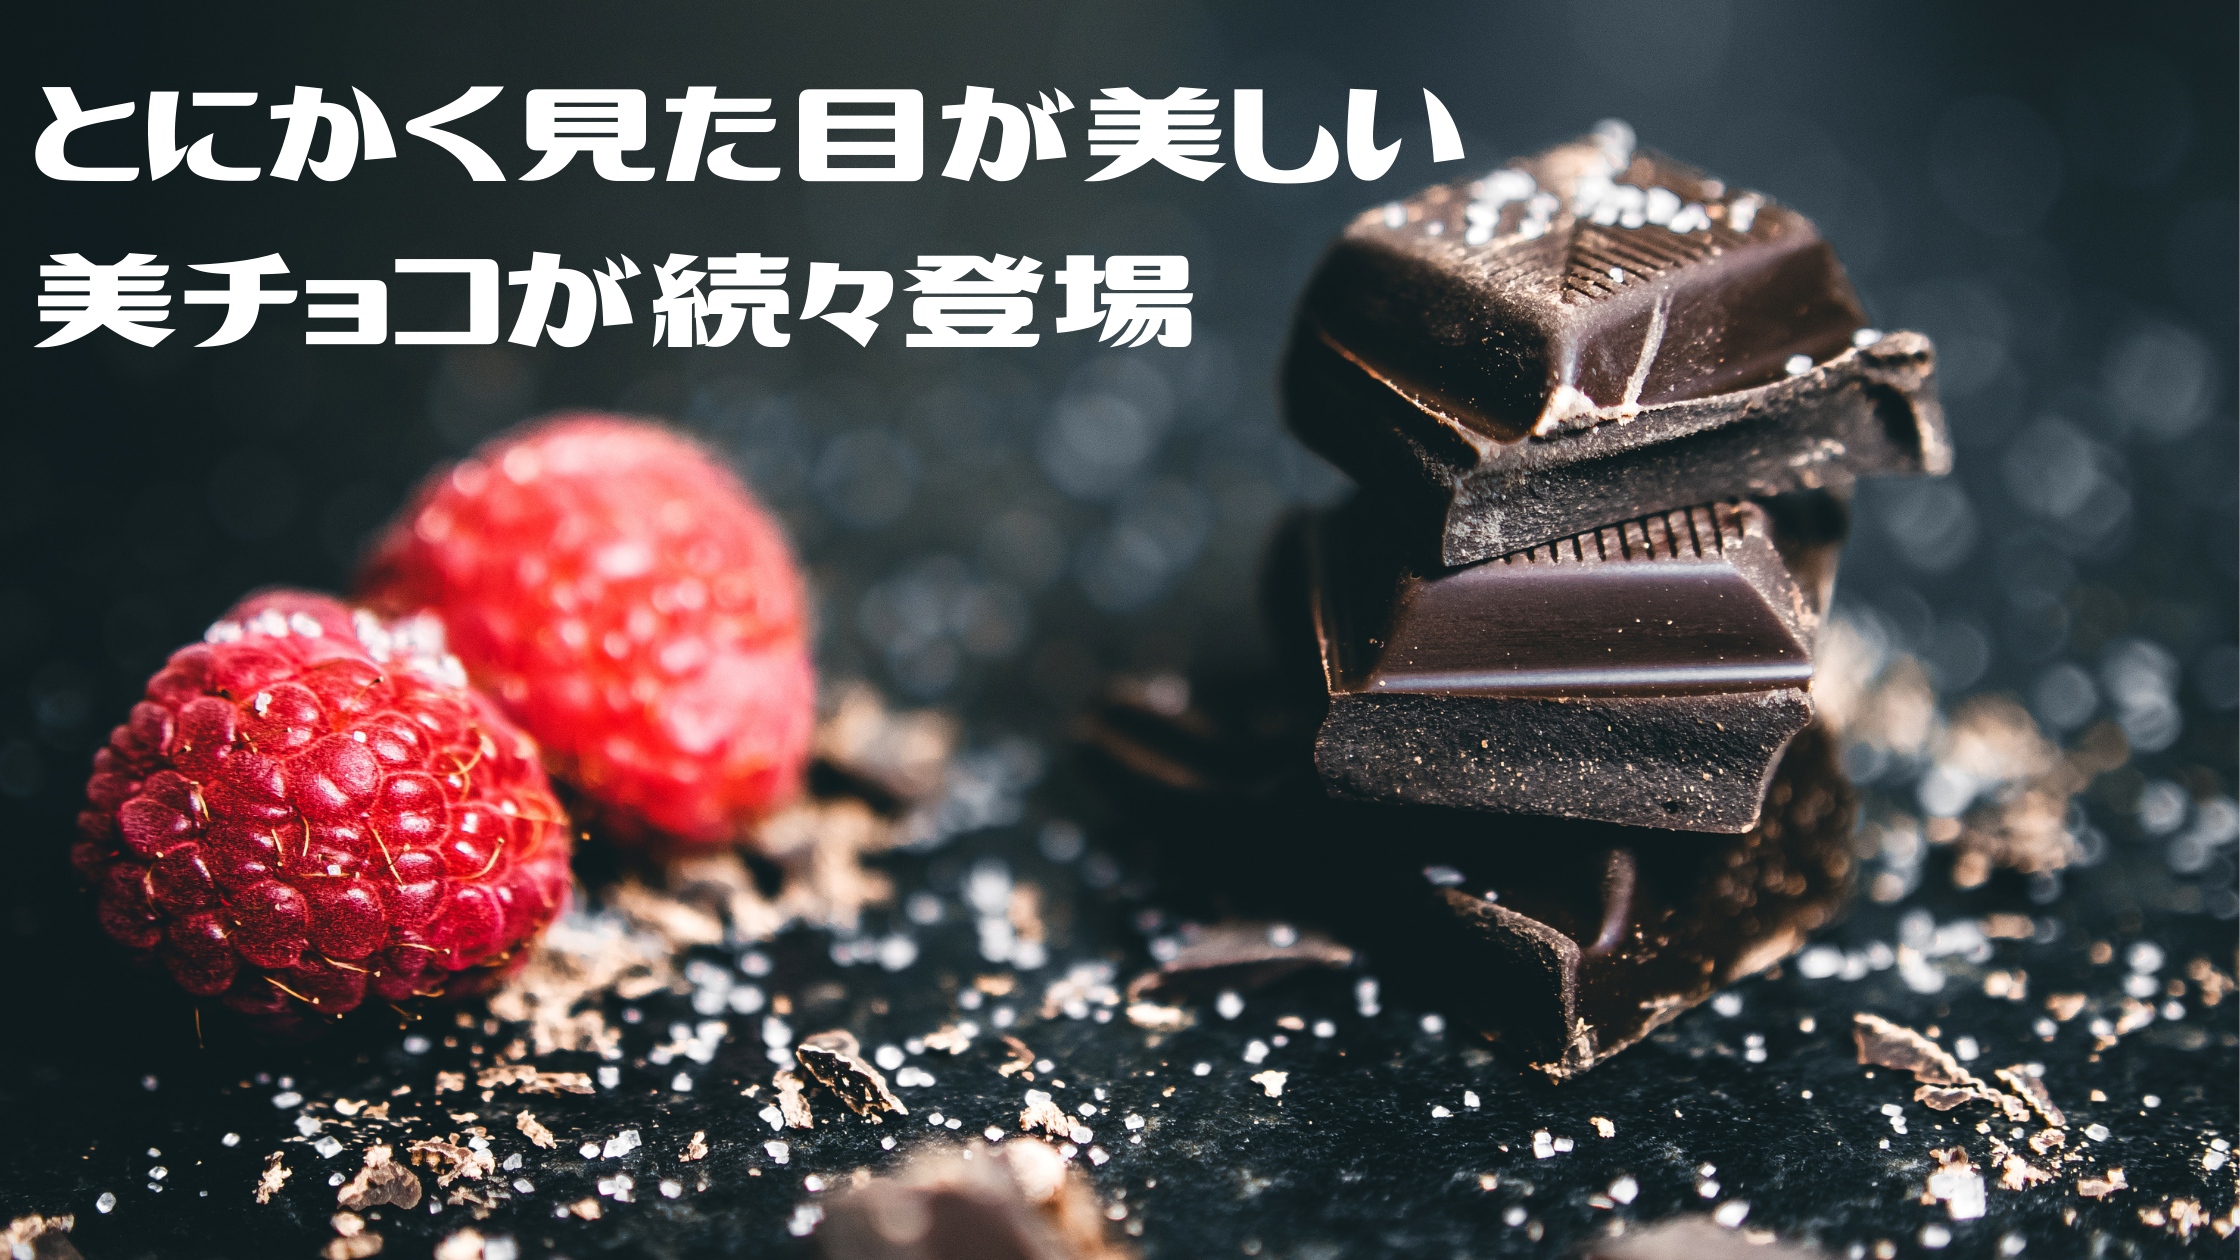 【ZIP】バレンタイン!とにかく見た目が美しい『ブーケのような花束チョコ』『日本画のようは和風チョコ』『青い花びらチョコ』　美チョコが続々登場